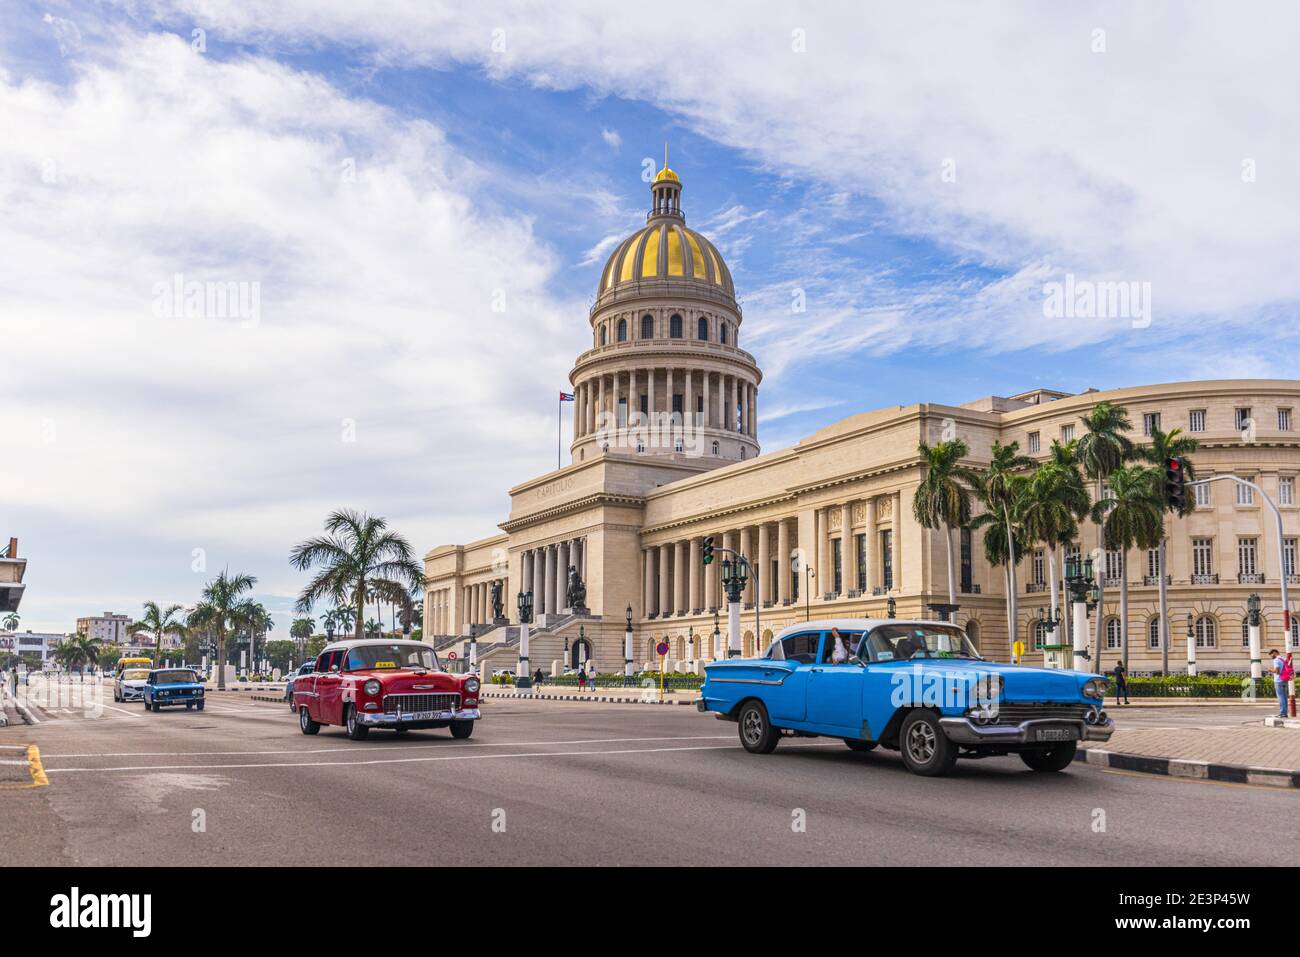 Capitolio costruisce l'Avana, Cuba con vecchie auto d'epoca americane Foto Stock